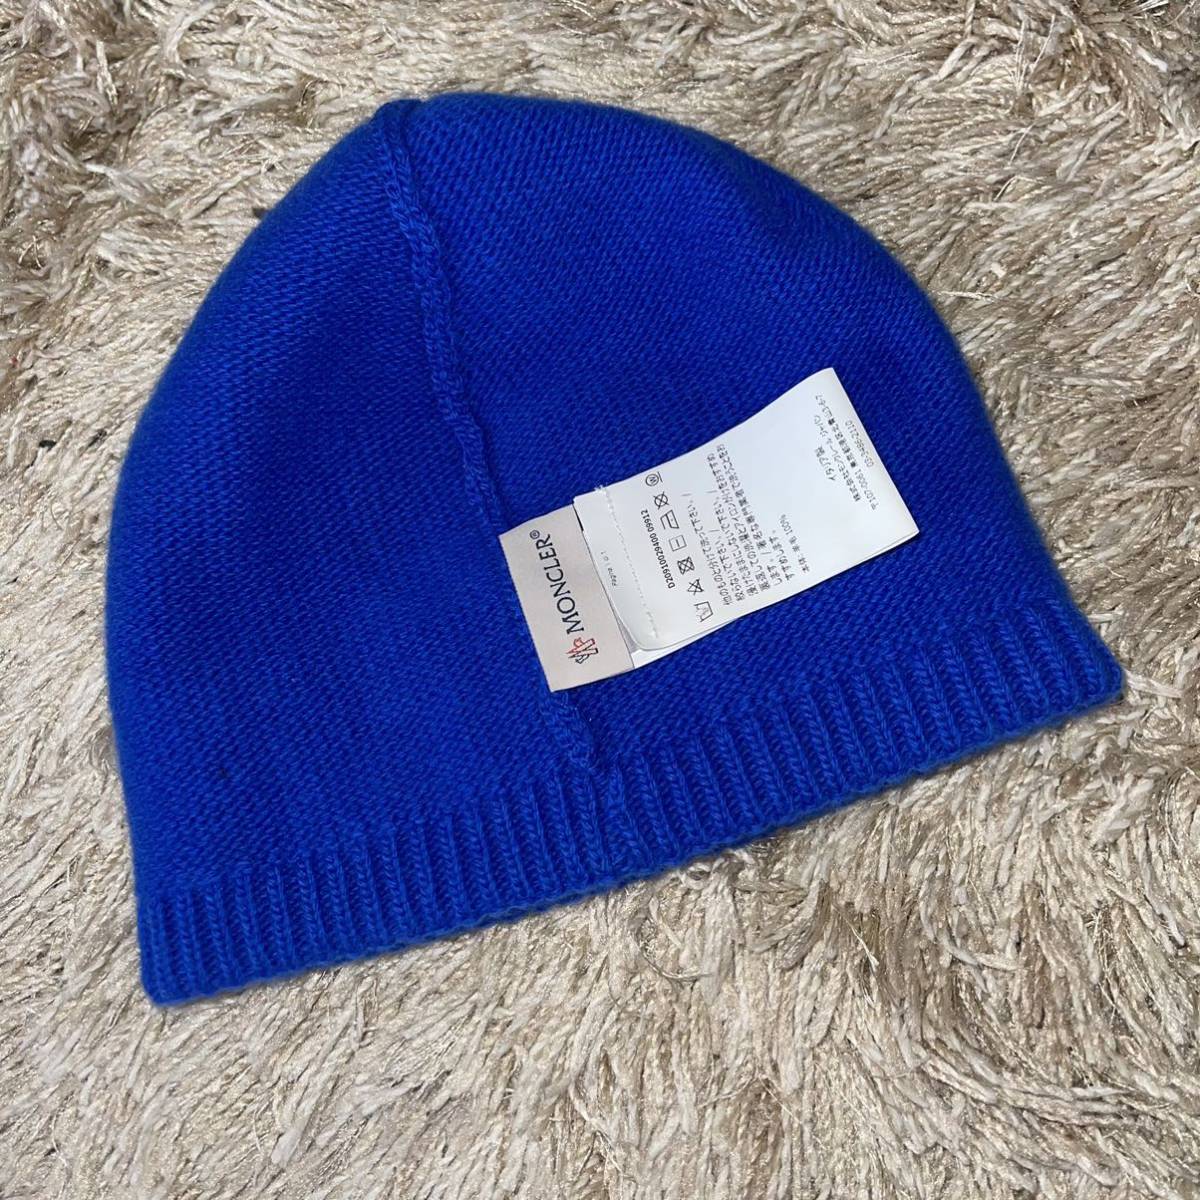 新品 モンクレール ニット帽 正規QRコード付き wool100% 送料無料 